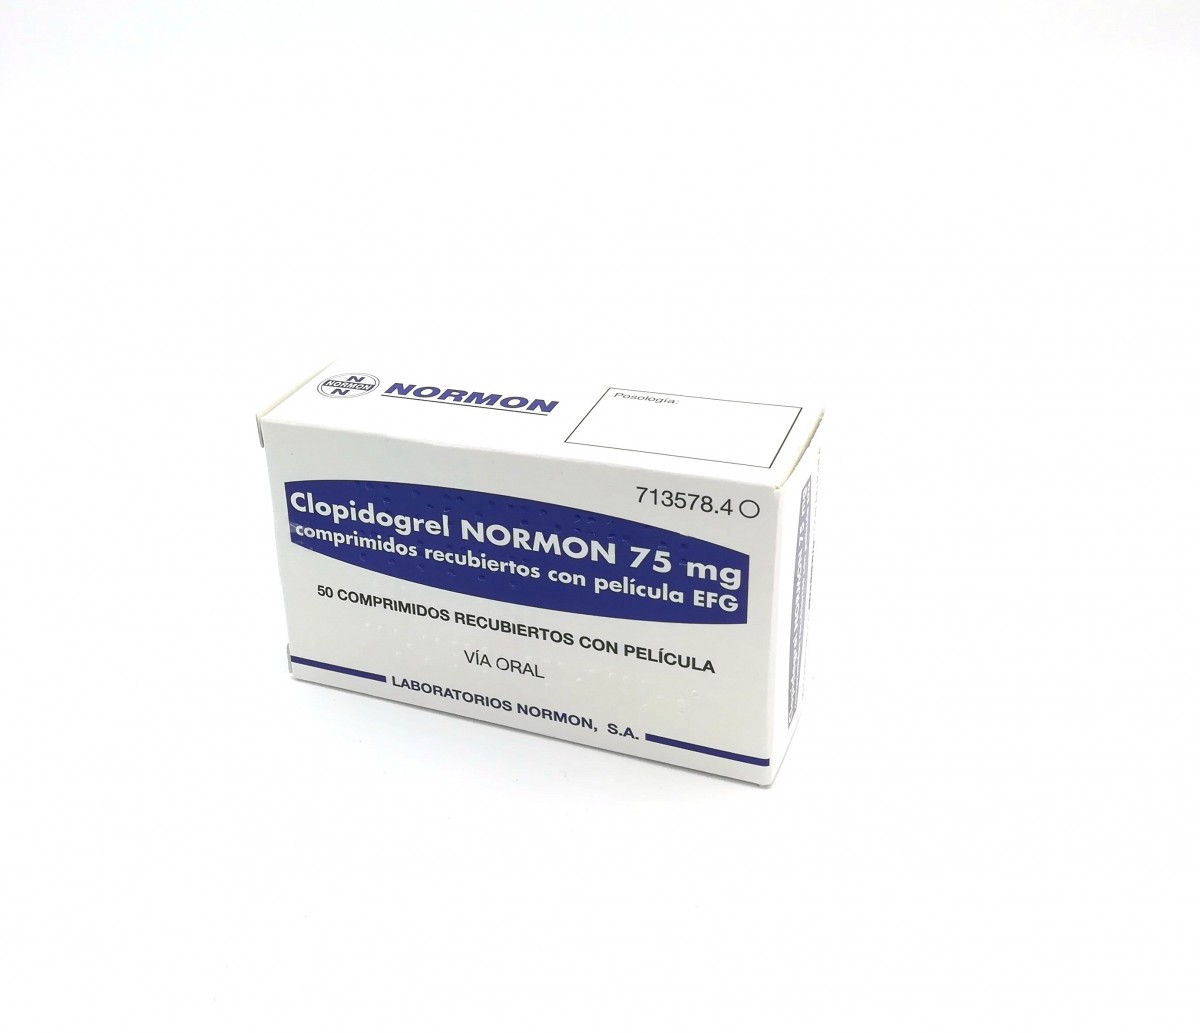 CLOPIDOGREL NORMON 75 mg COMPRIMIDOS RECUBIERTOS CON PELICULA EFG, 28 comprimidos (Blister Al/PVDC/PE/PVC) fotografía del envase.